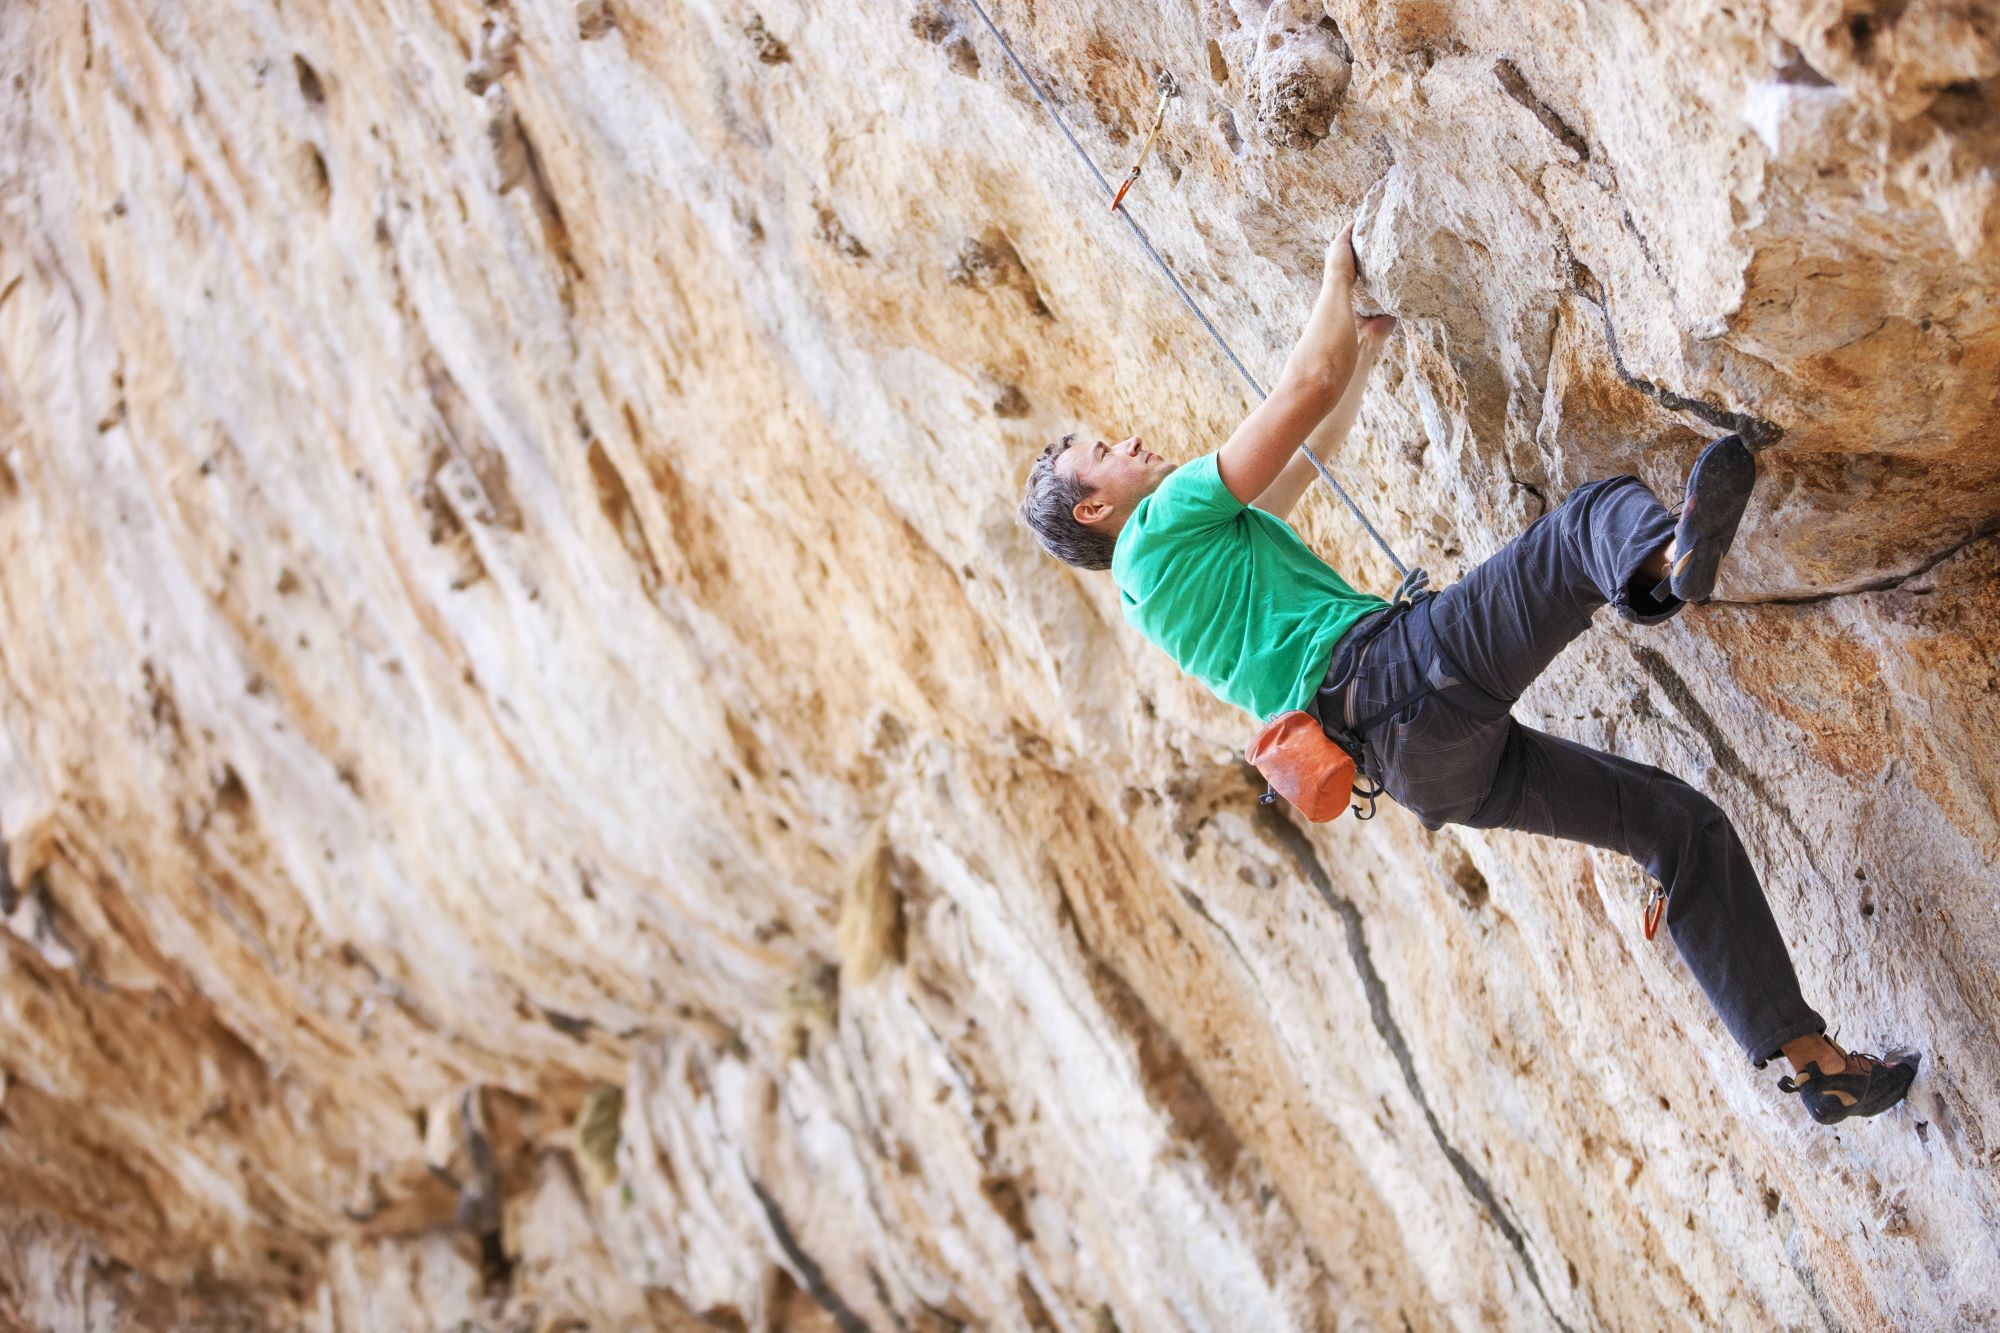 Rock climbing challenges at Lake Garda's cliffs